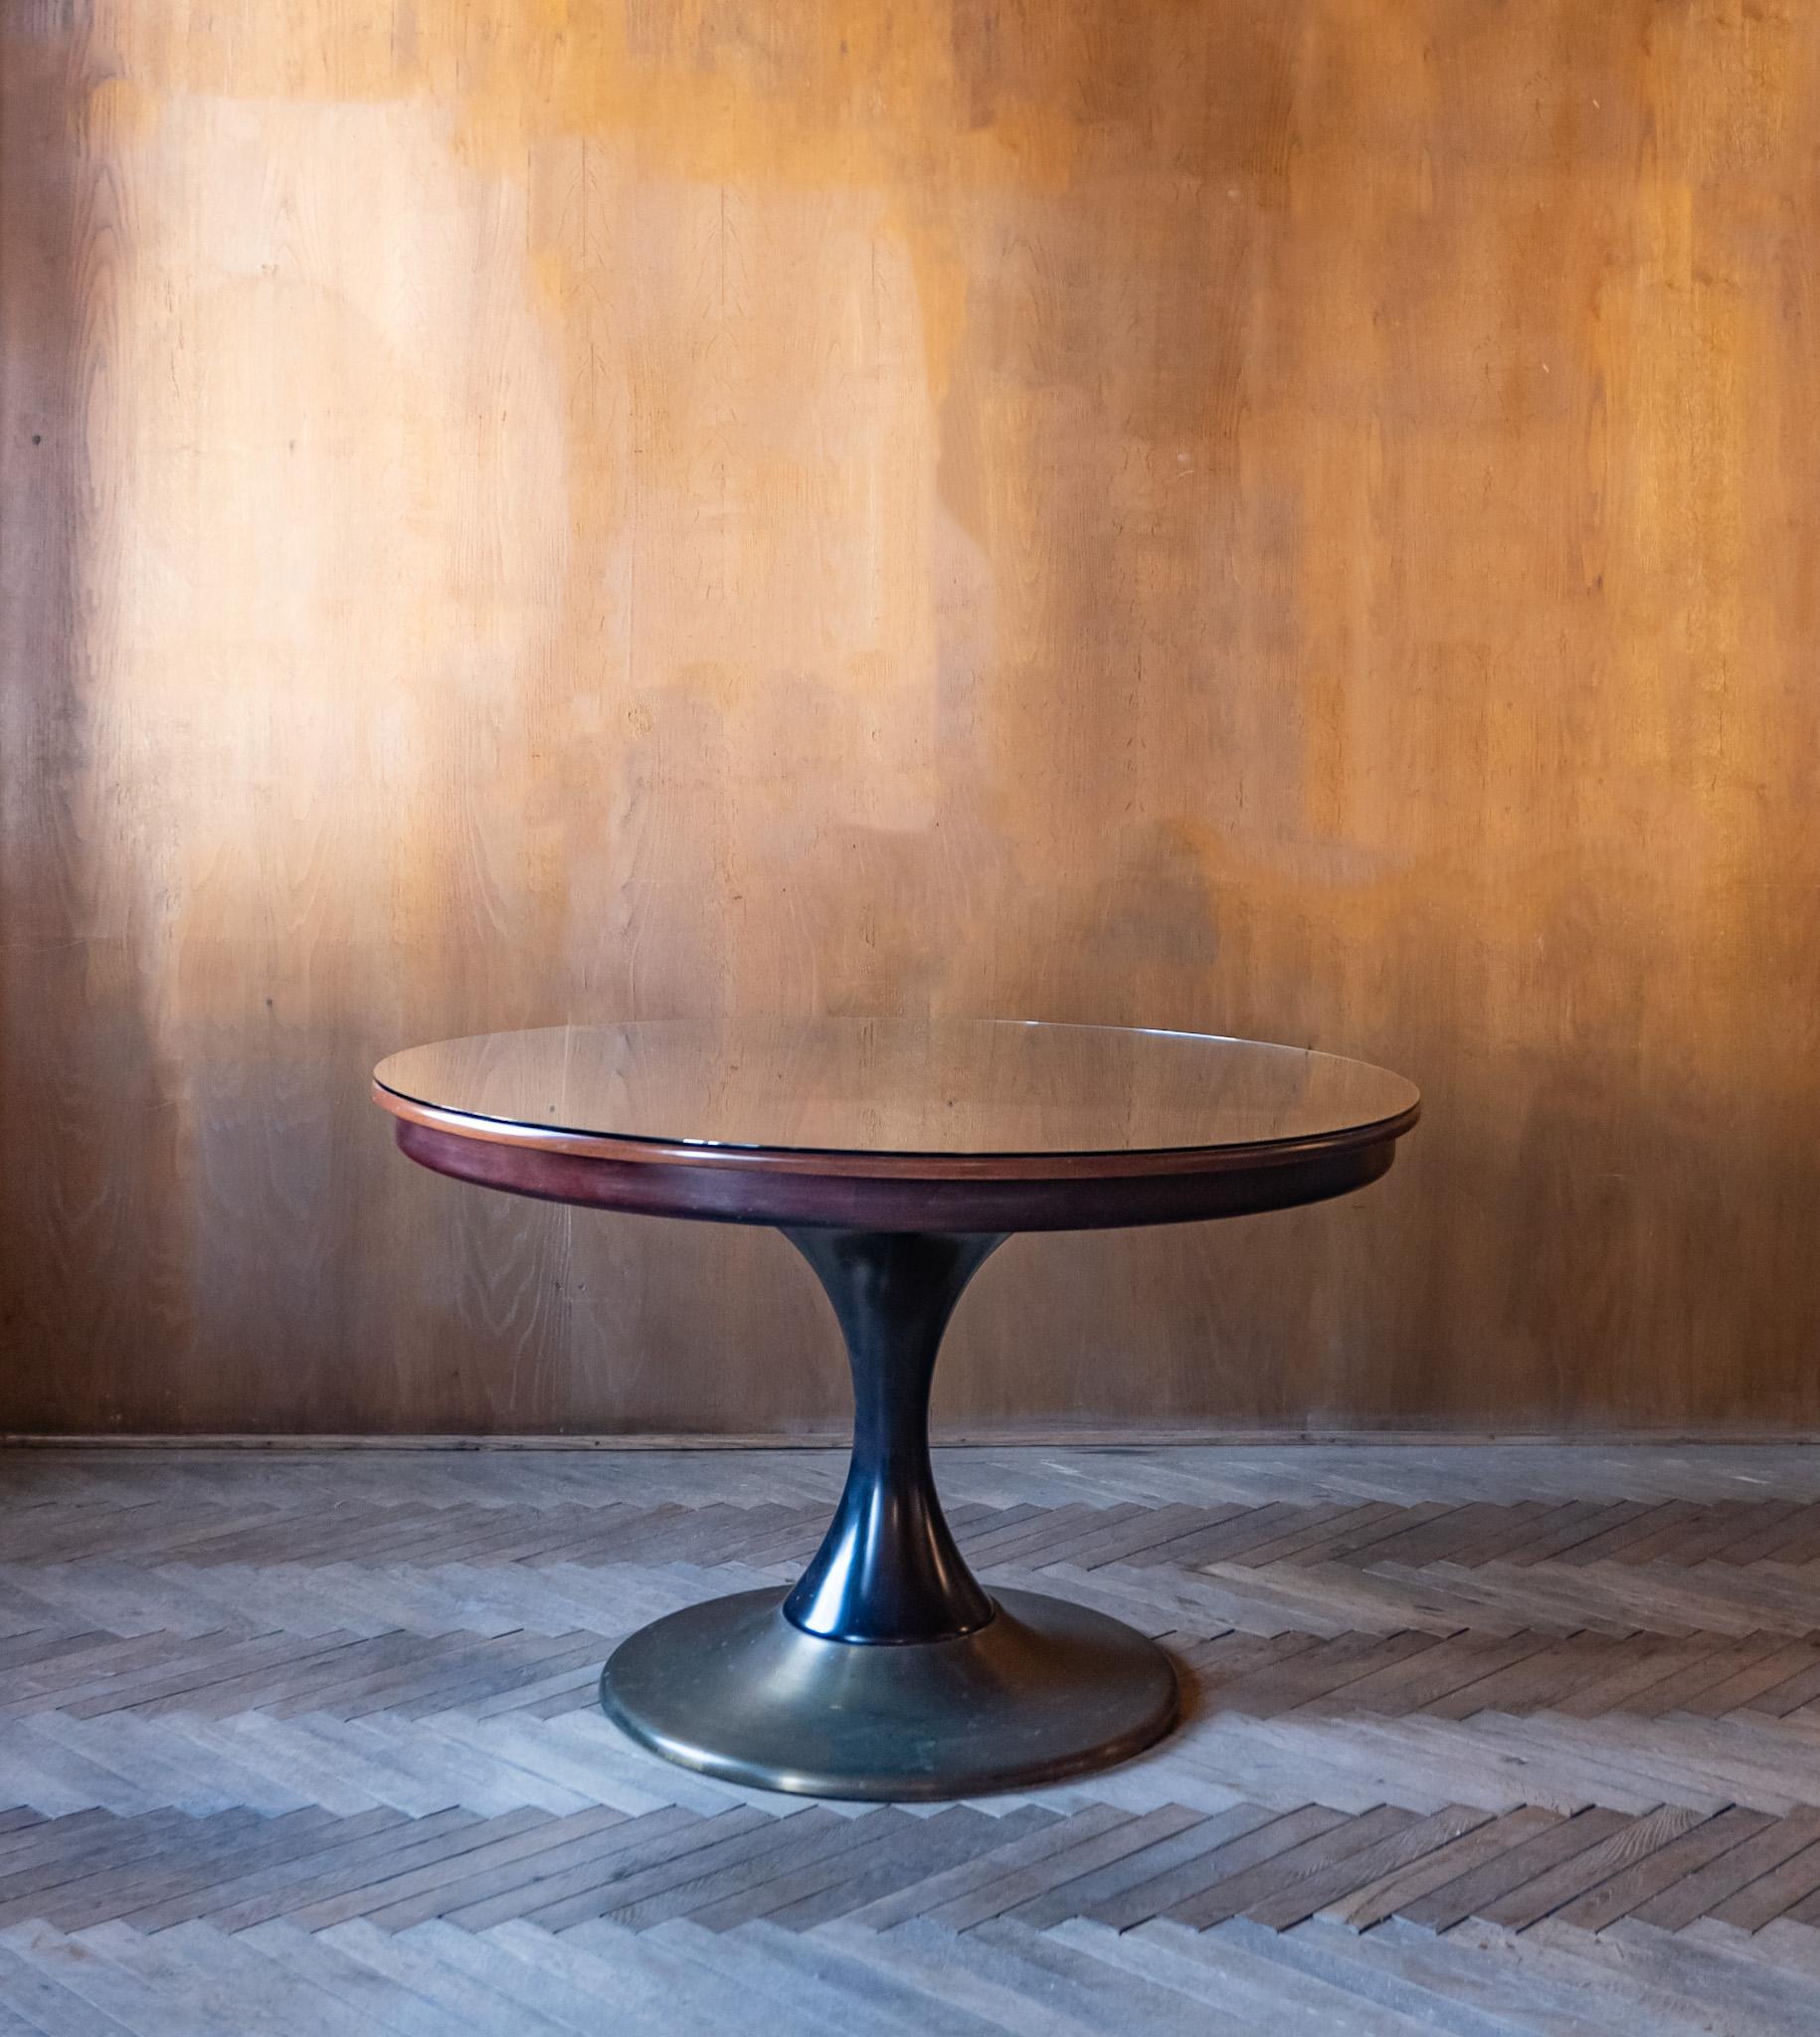 Moderner runder Esstisch aus Holz und Messing aus der Mitte des Jahrhunderts, Italien 1950.

Dieser elegante italienische Esstisch in wunderschönen Brauntönen besteht aus einer Tischplatte und einem Tischfuß aus Nussbaum und Messing. Die